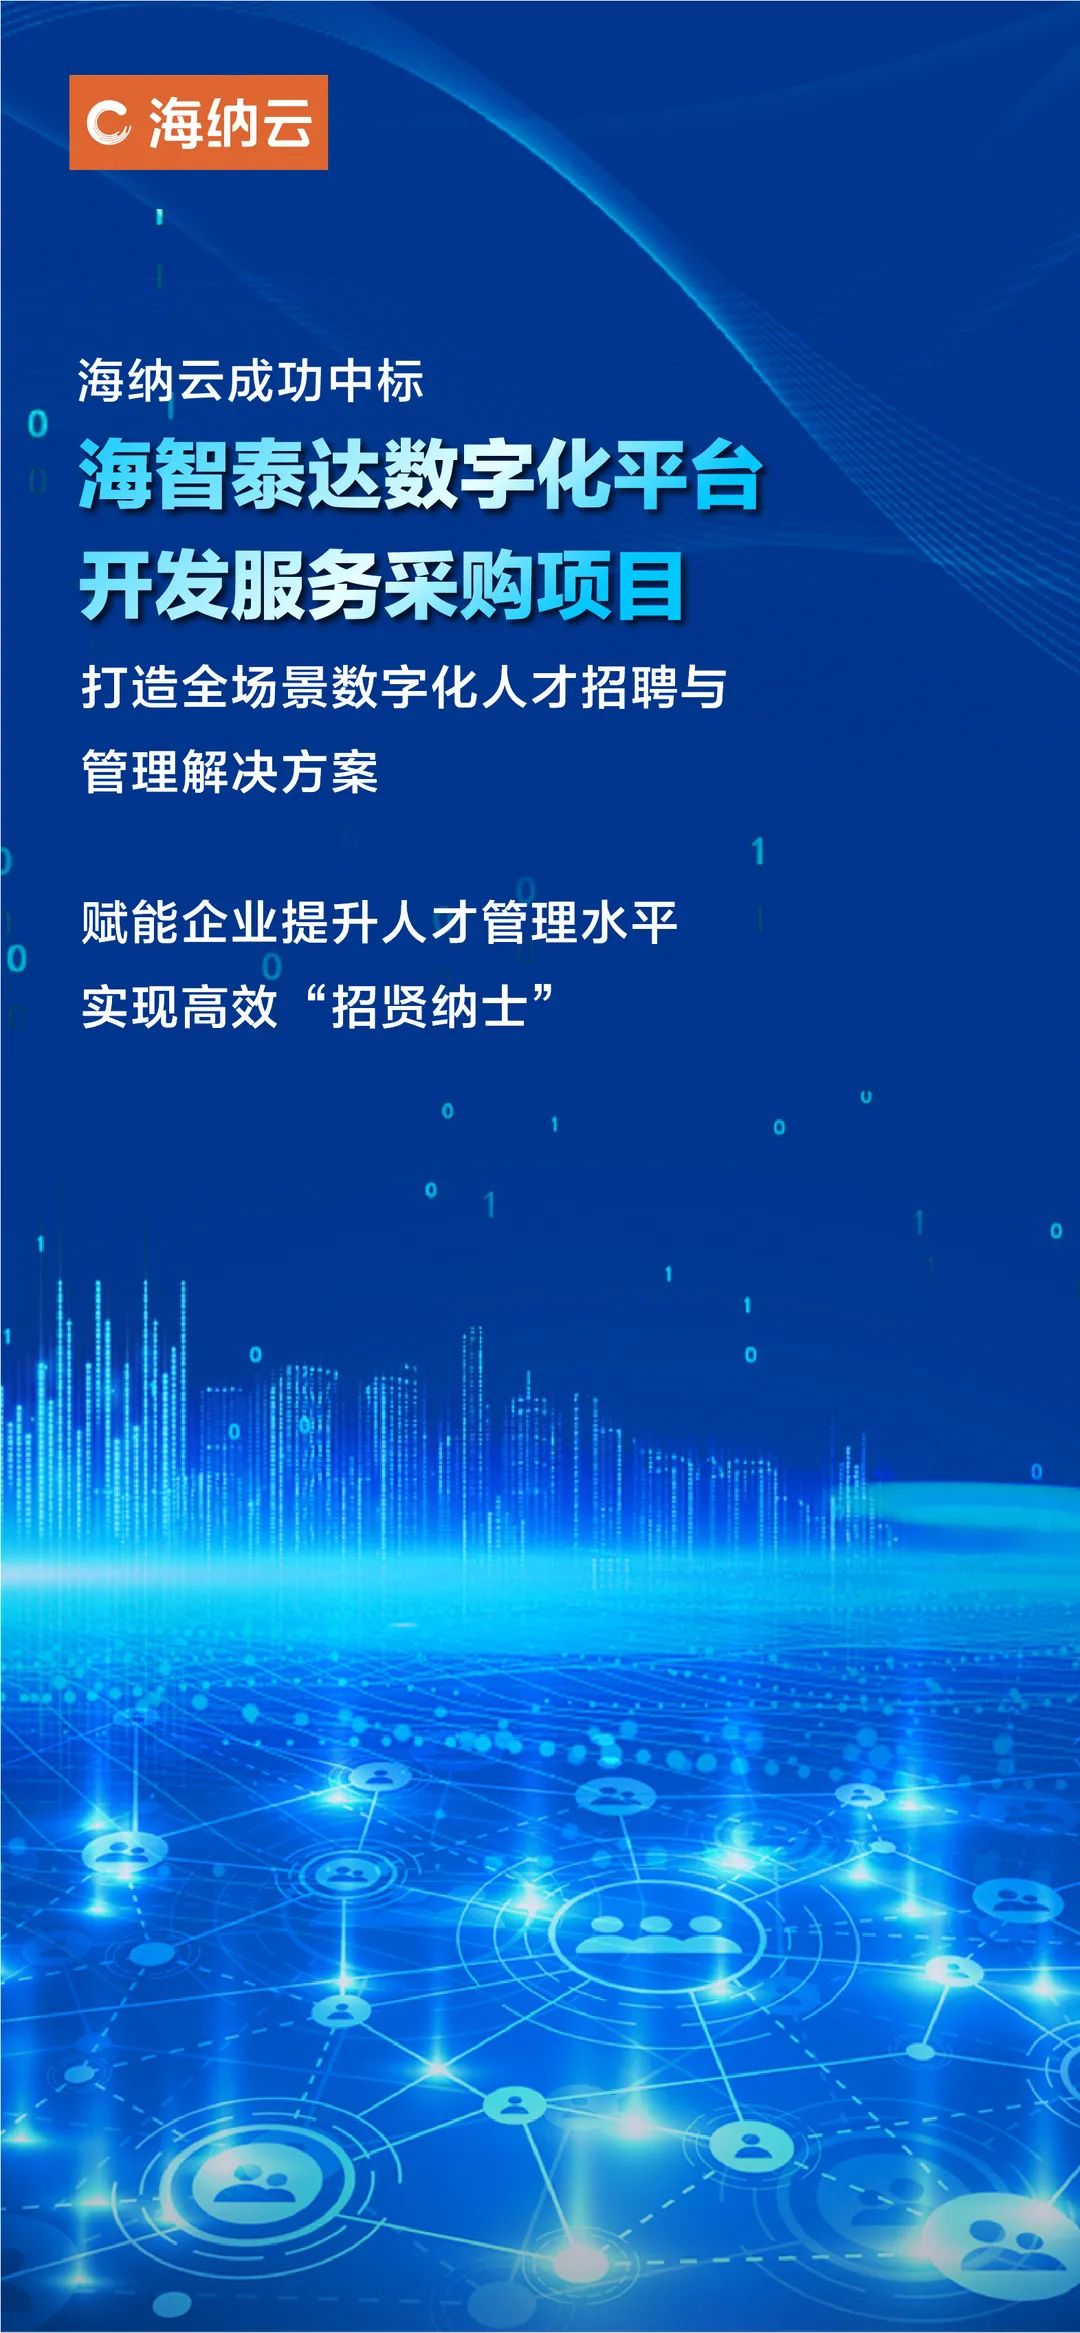 海纳云成功中标“海智泰达数字化平台开发服务采购项目”